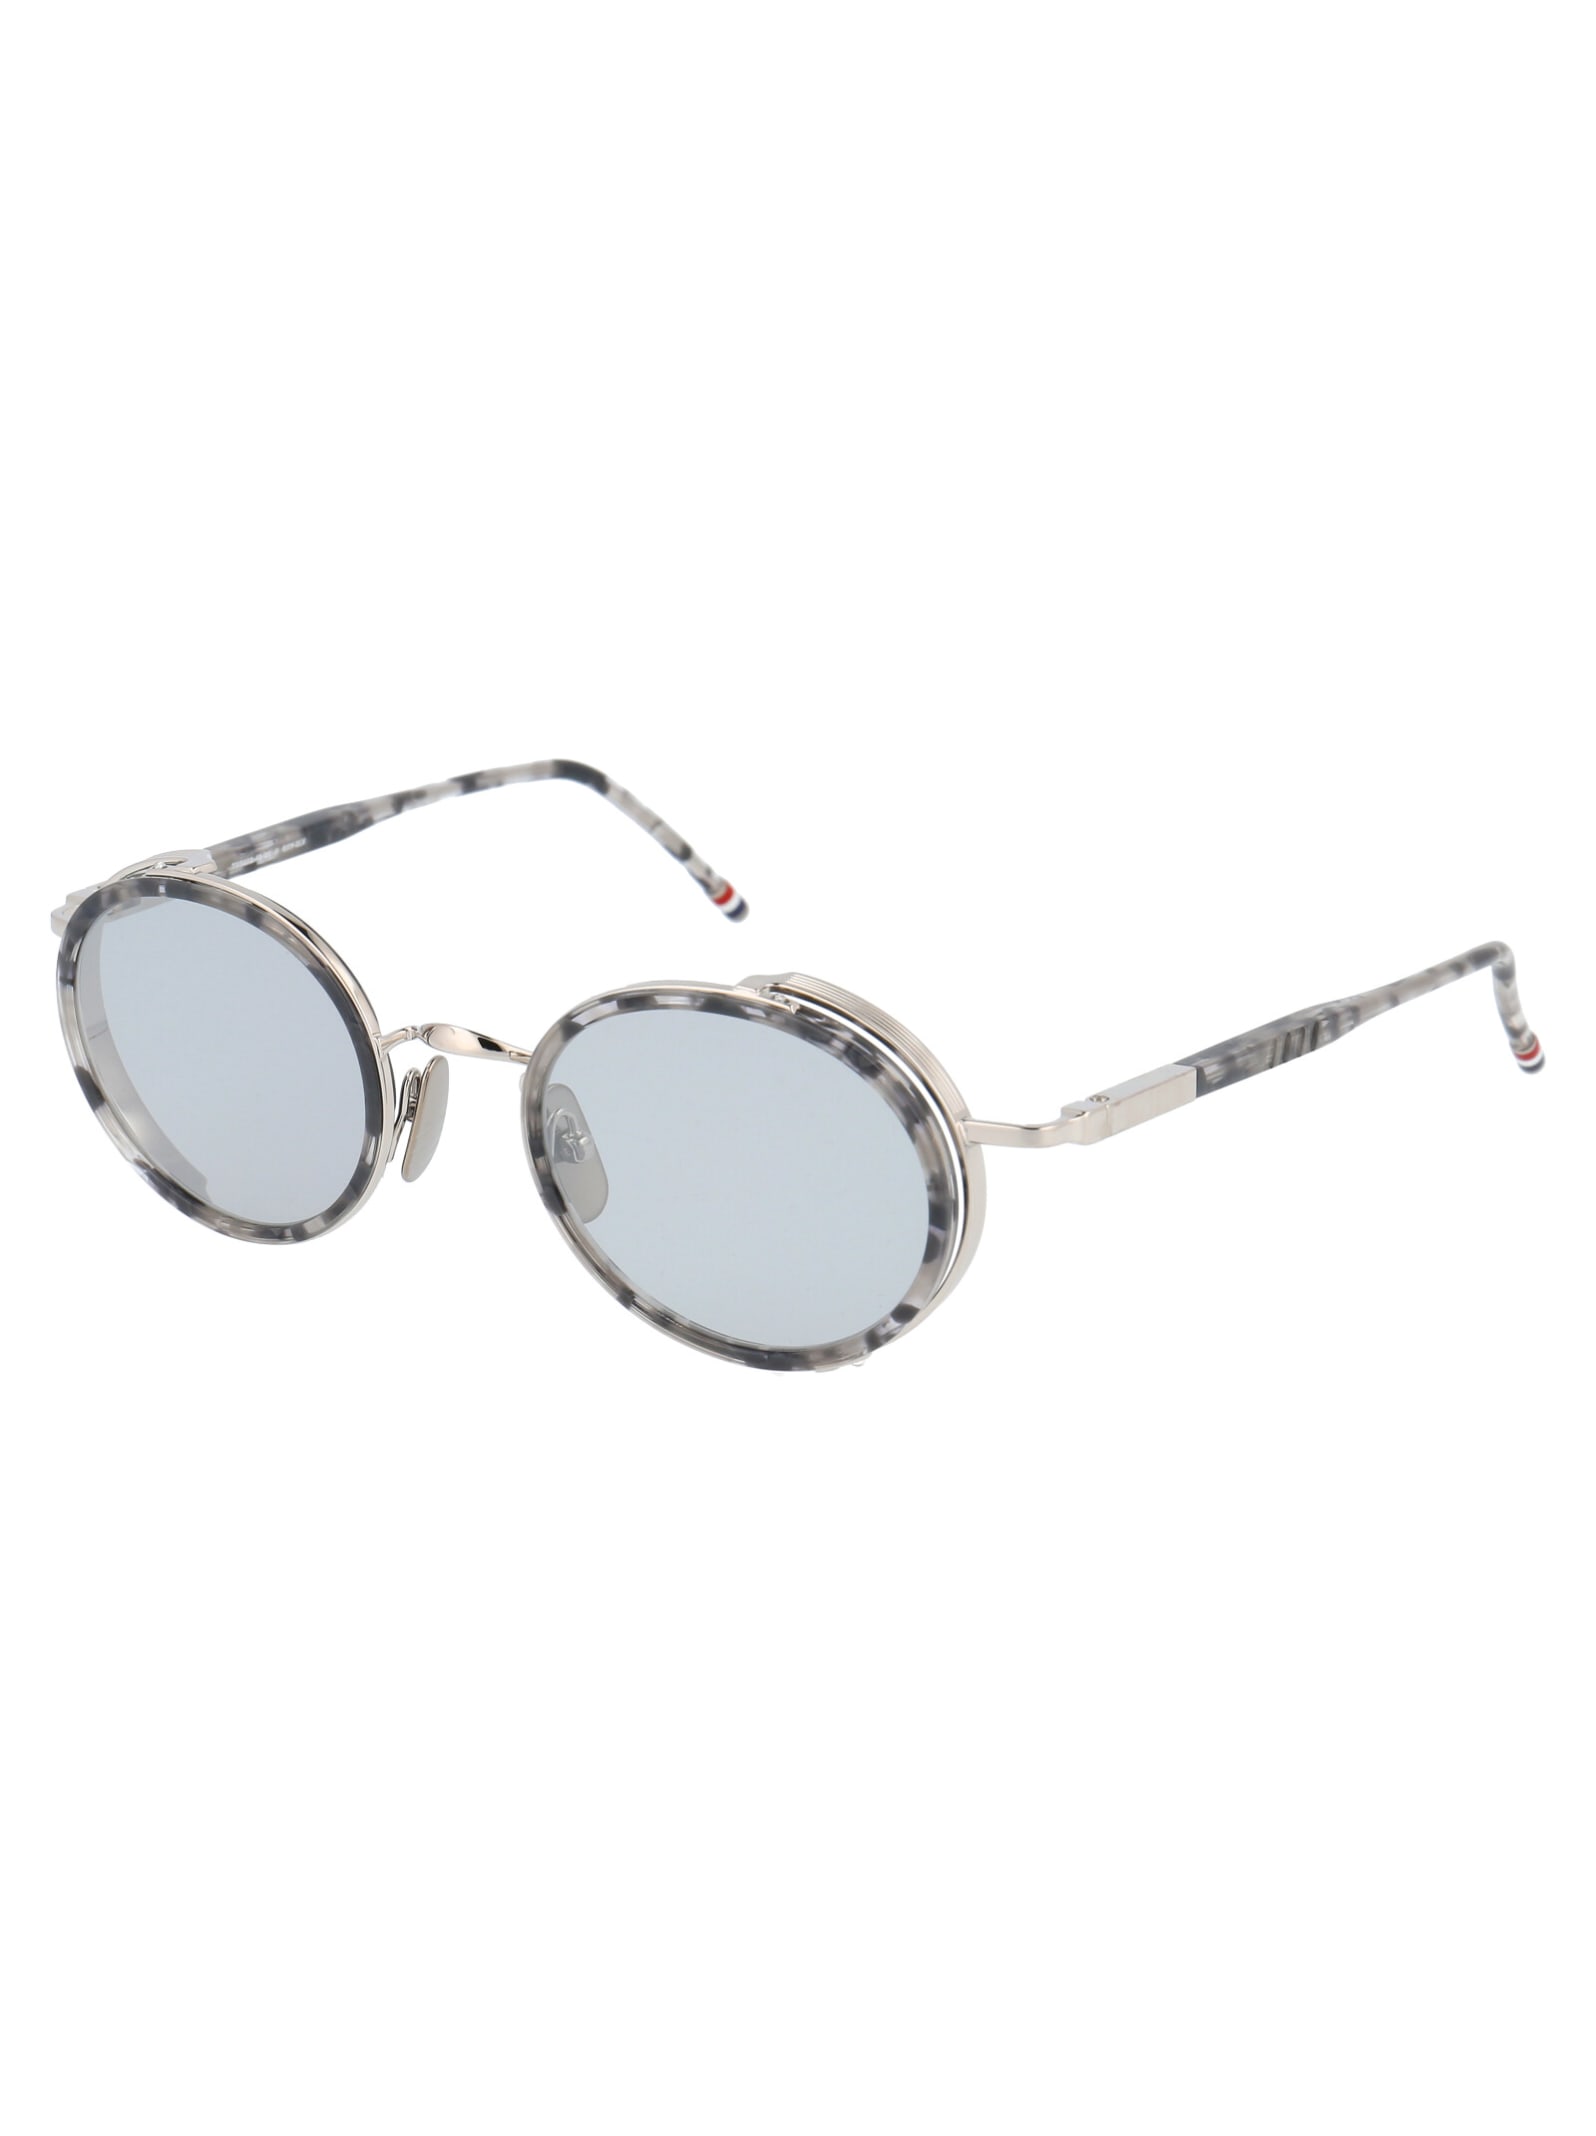 Shop Thom Browne Tb-813 Sunglasses In Grey Tortoise - Silver W/ Medium Grey - Silver Flash - Ar